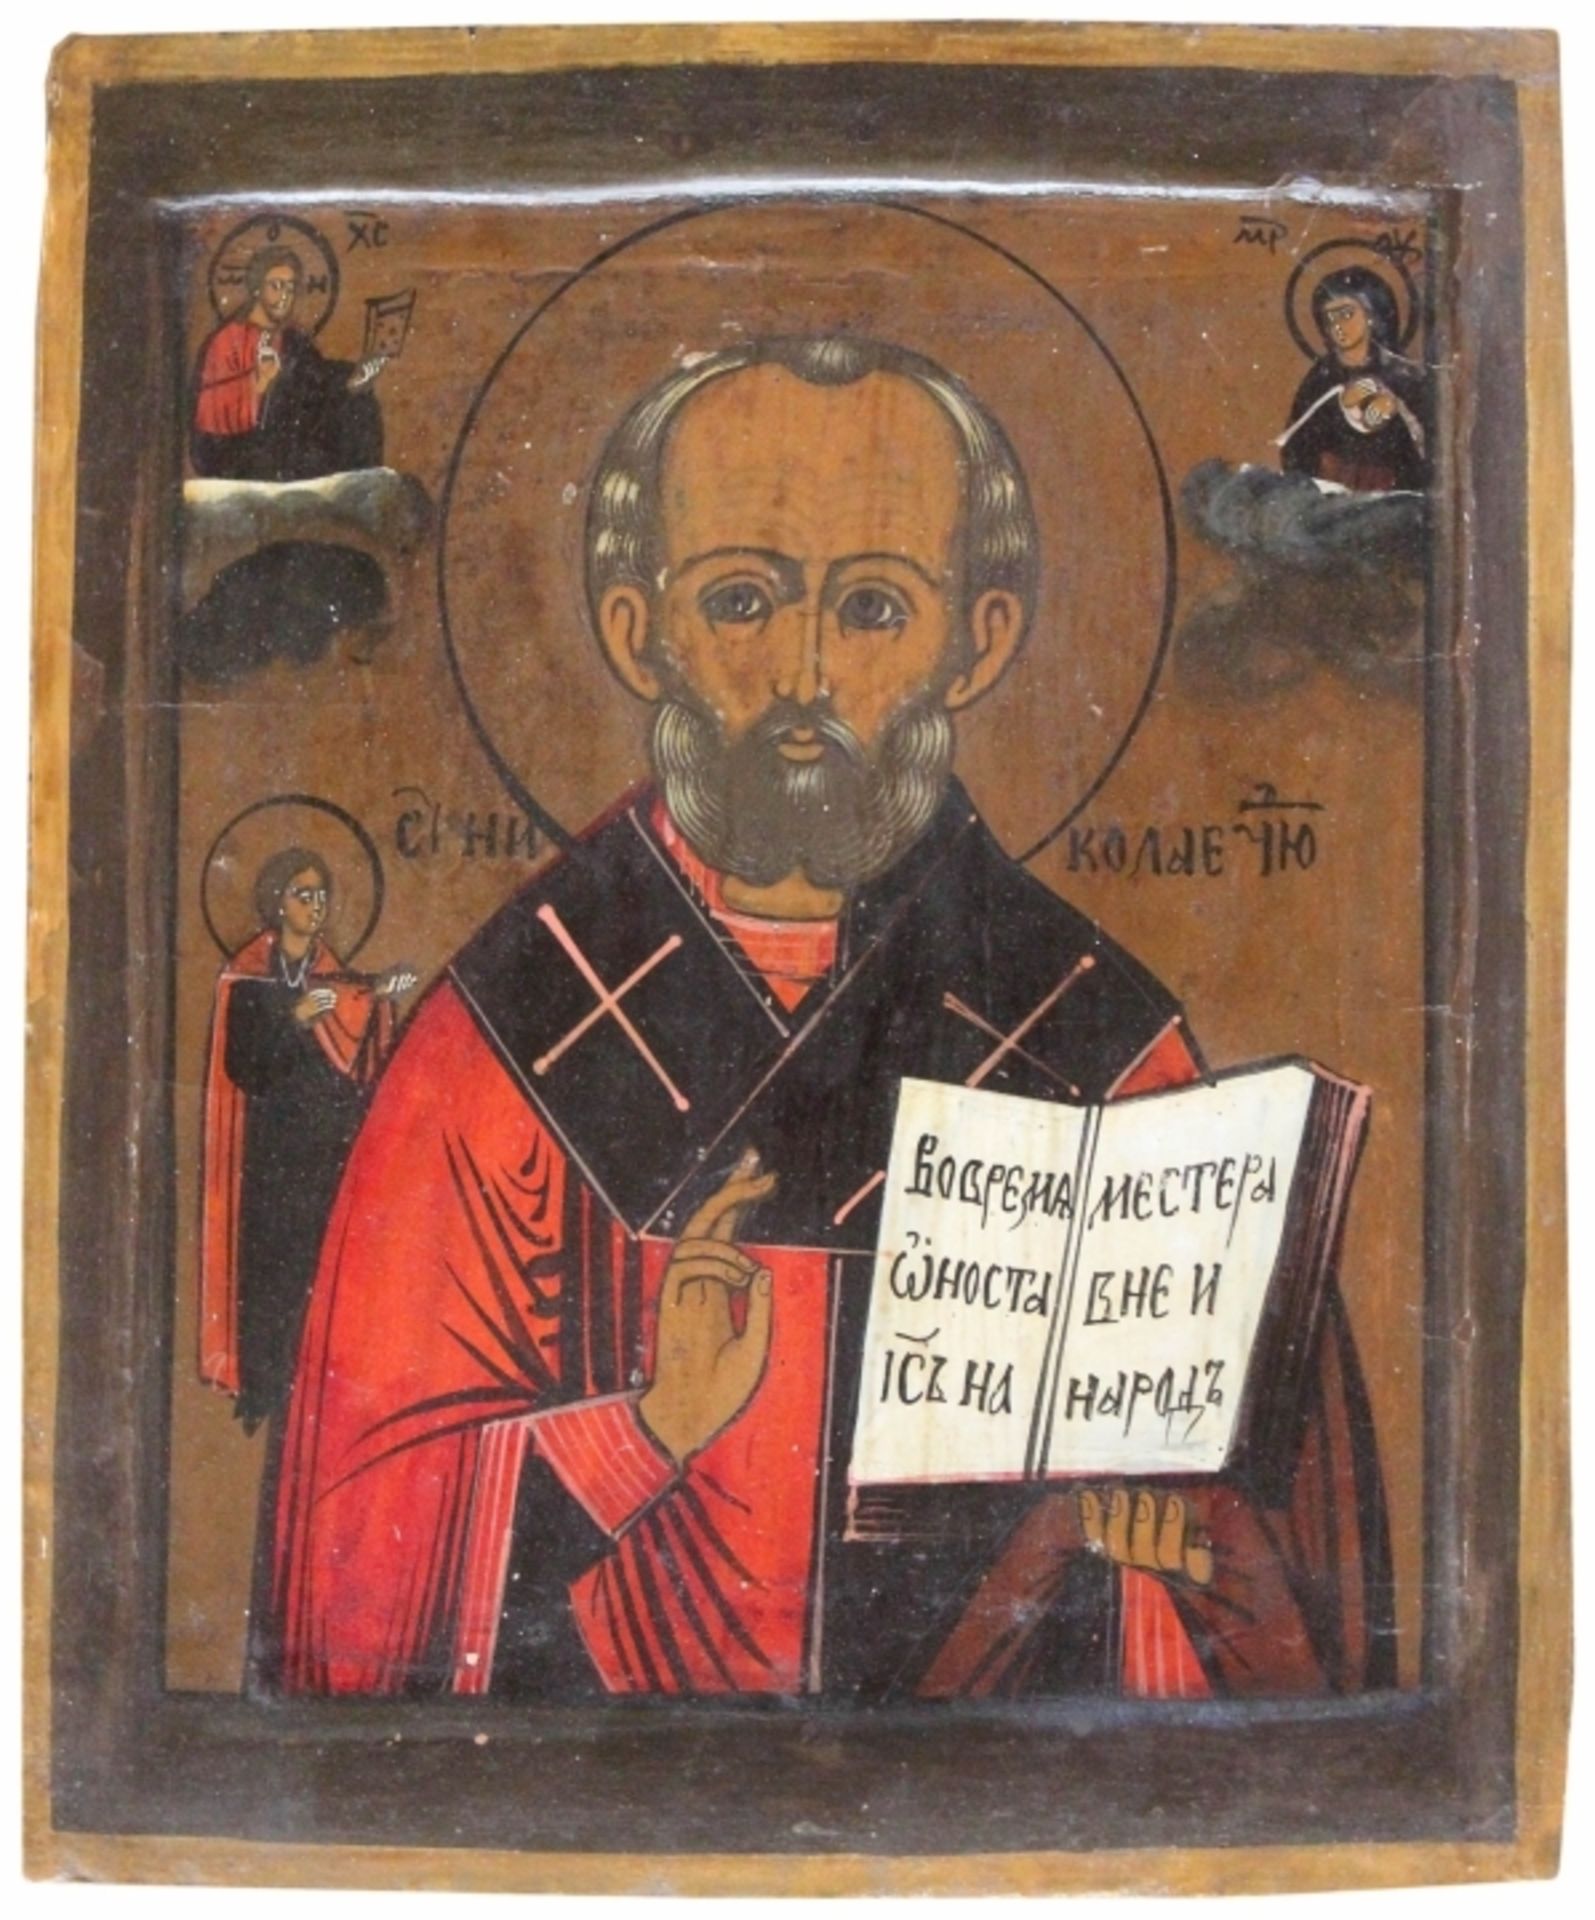 Ikone - russisch 19. Jahrhundert "Heiliger Nikolaus", Tempera auf Holz, Altersspuren, Maße ca. 30x25